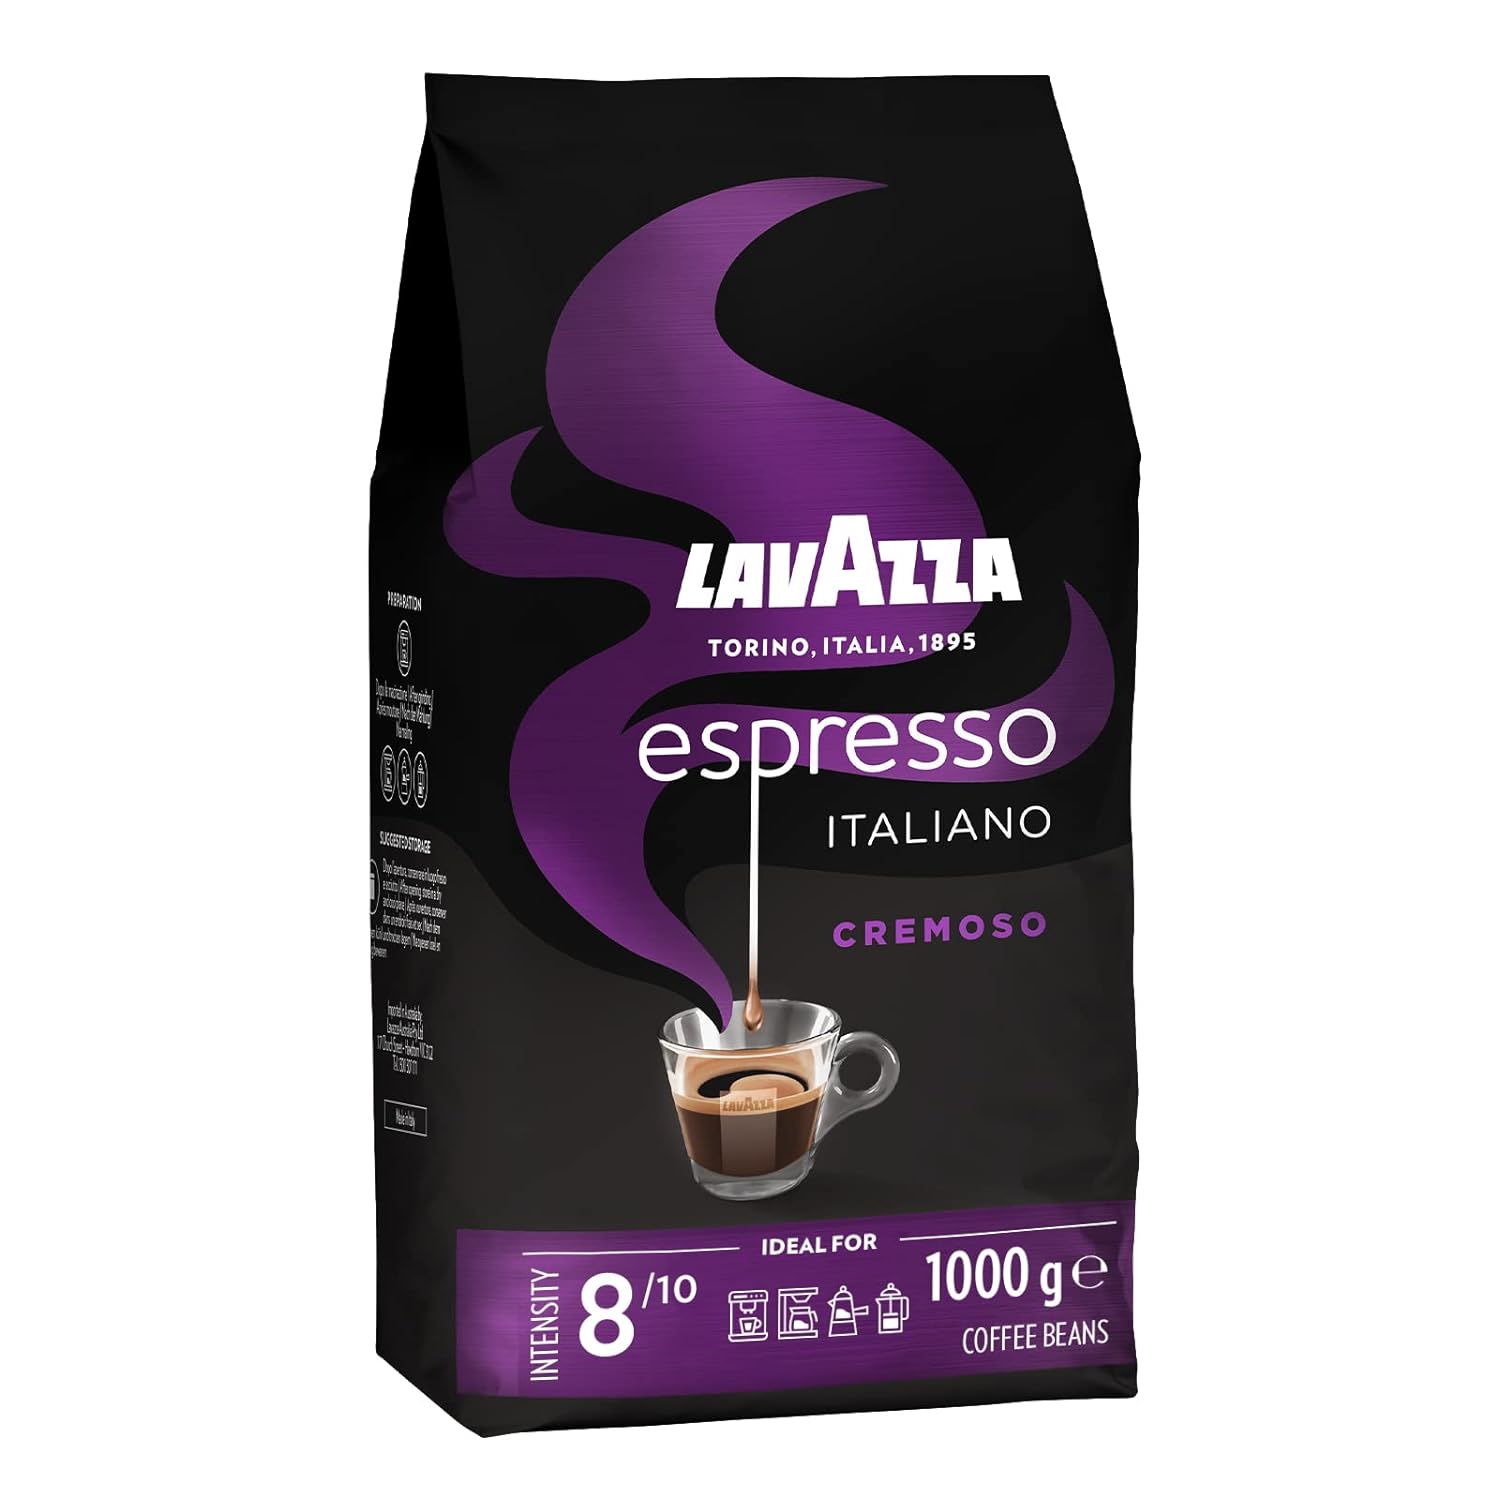 Lavazza Espresso - Italiano Cremoso - Aromatic coffee beans - 6 -person pack (6 x 1 kg)